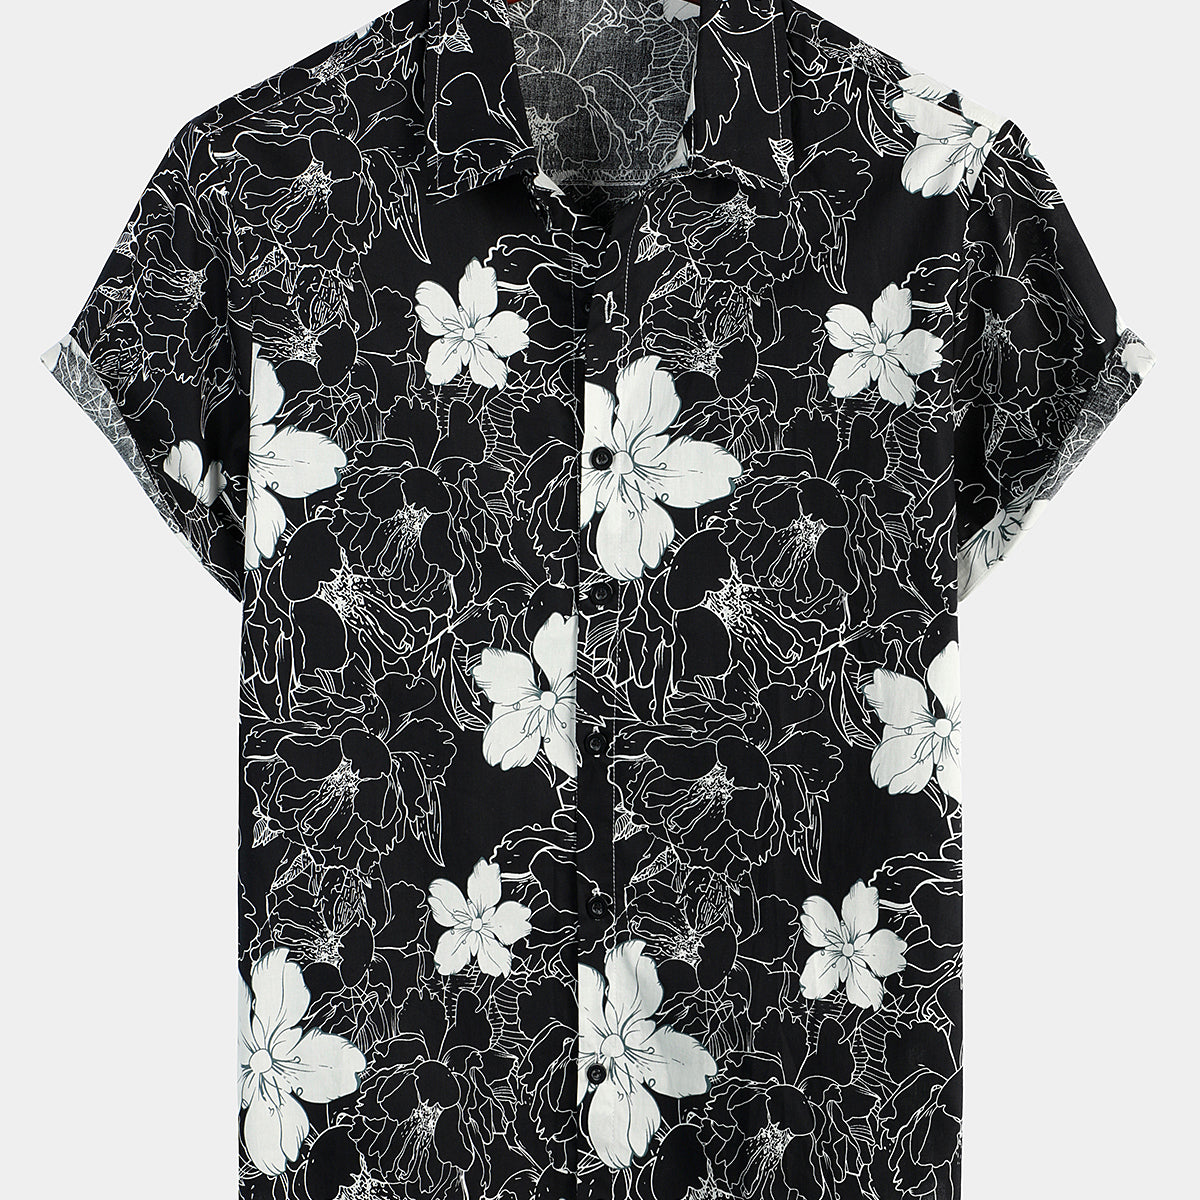 Men's Flower Print Short Sleeve Hawaiian Shirt